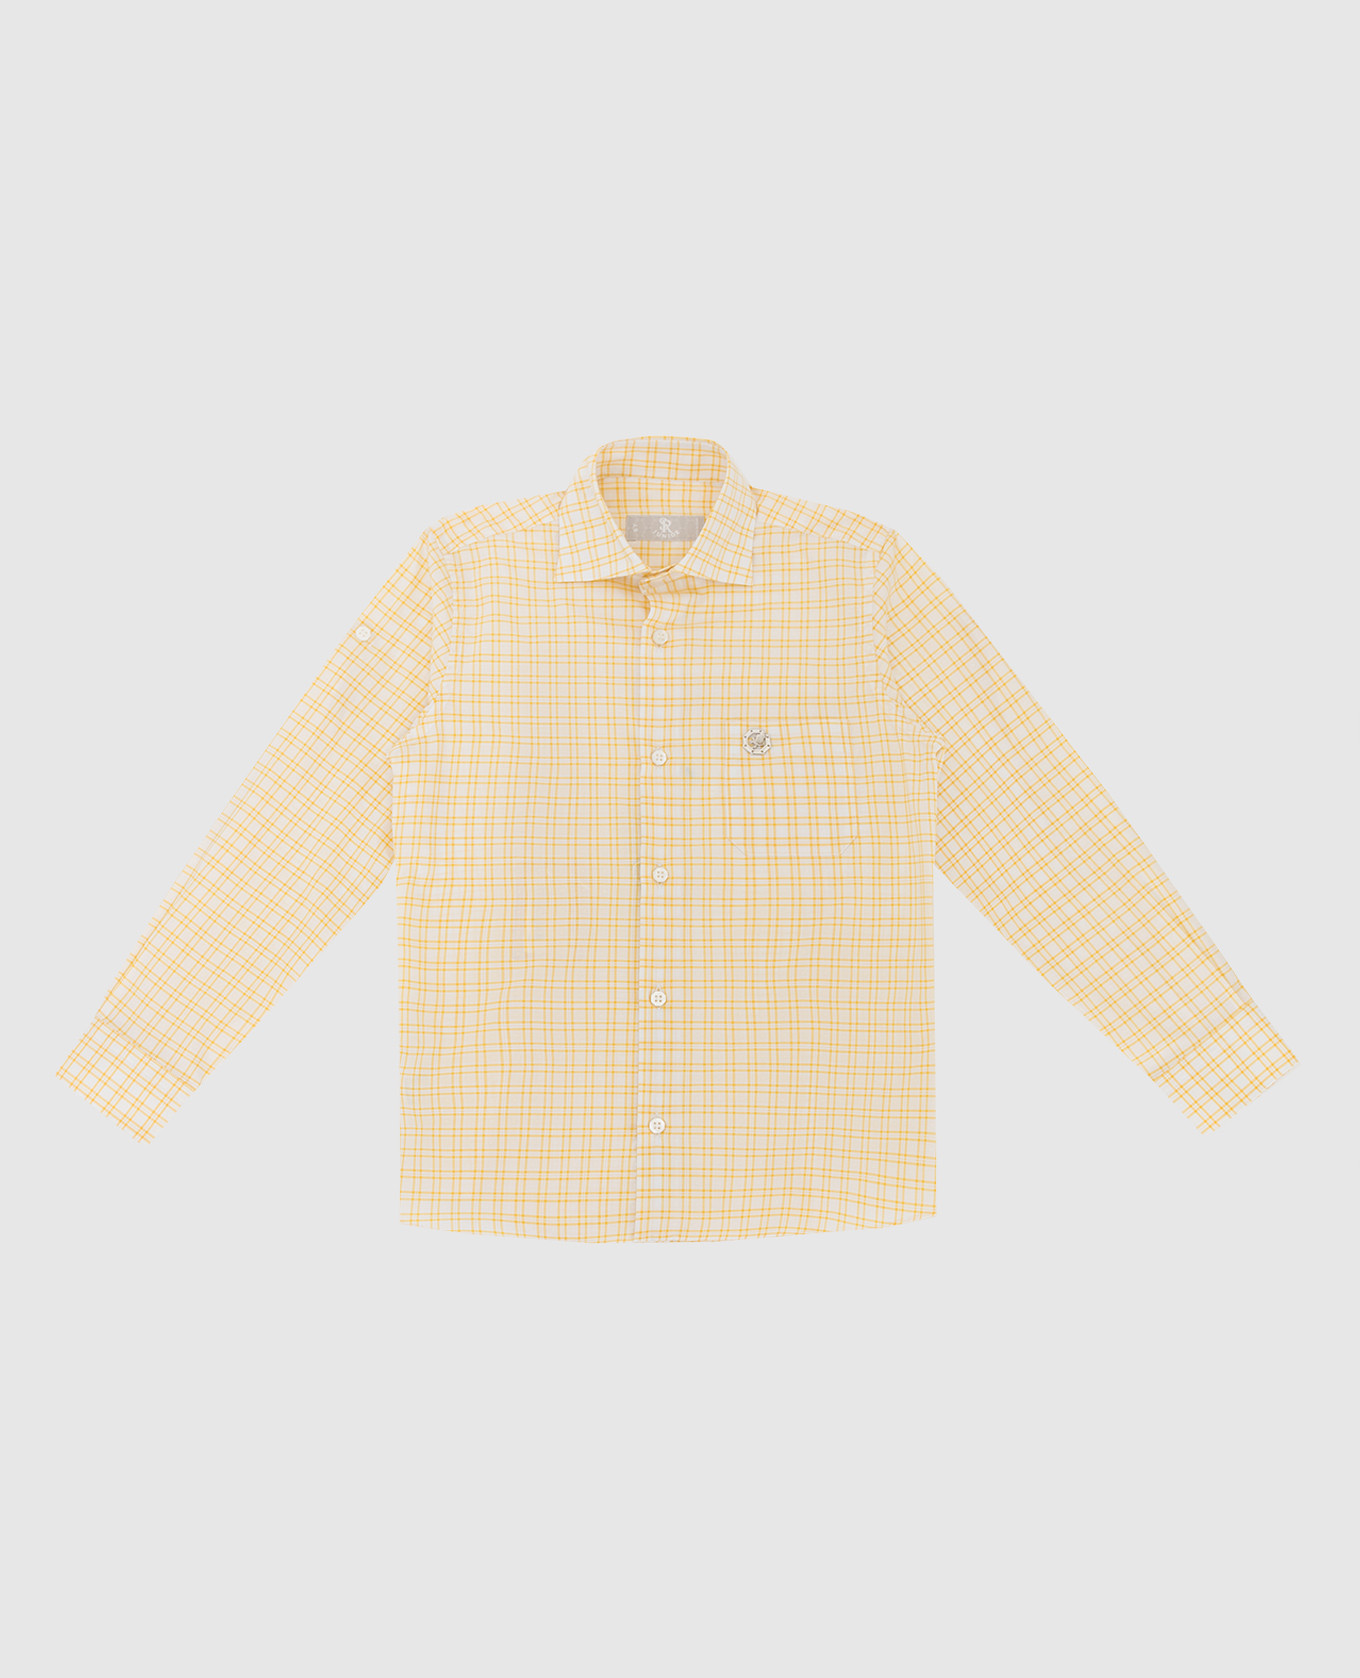 Children's yellow checkered shirt